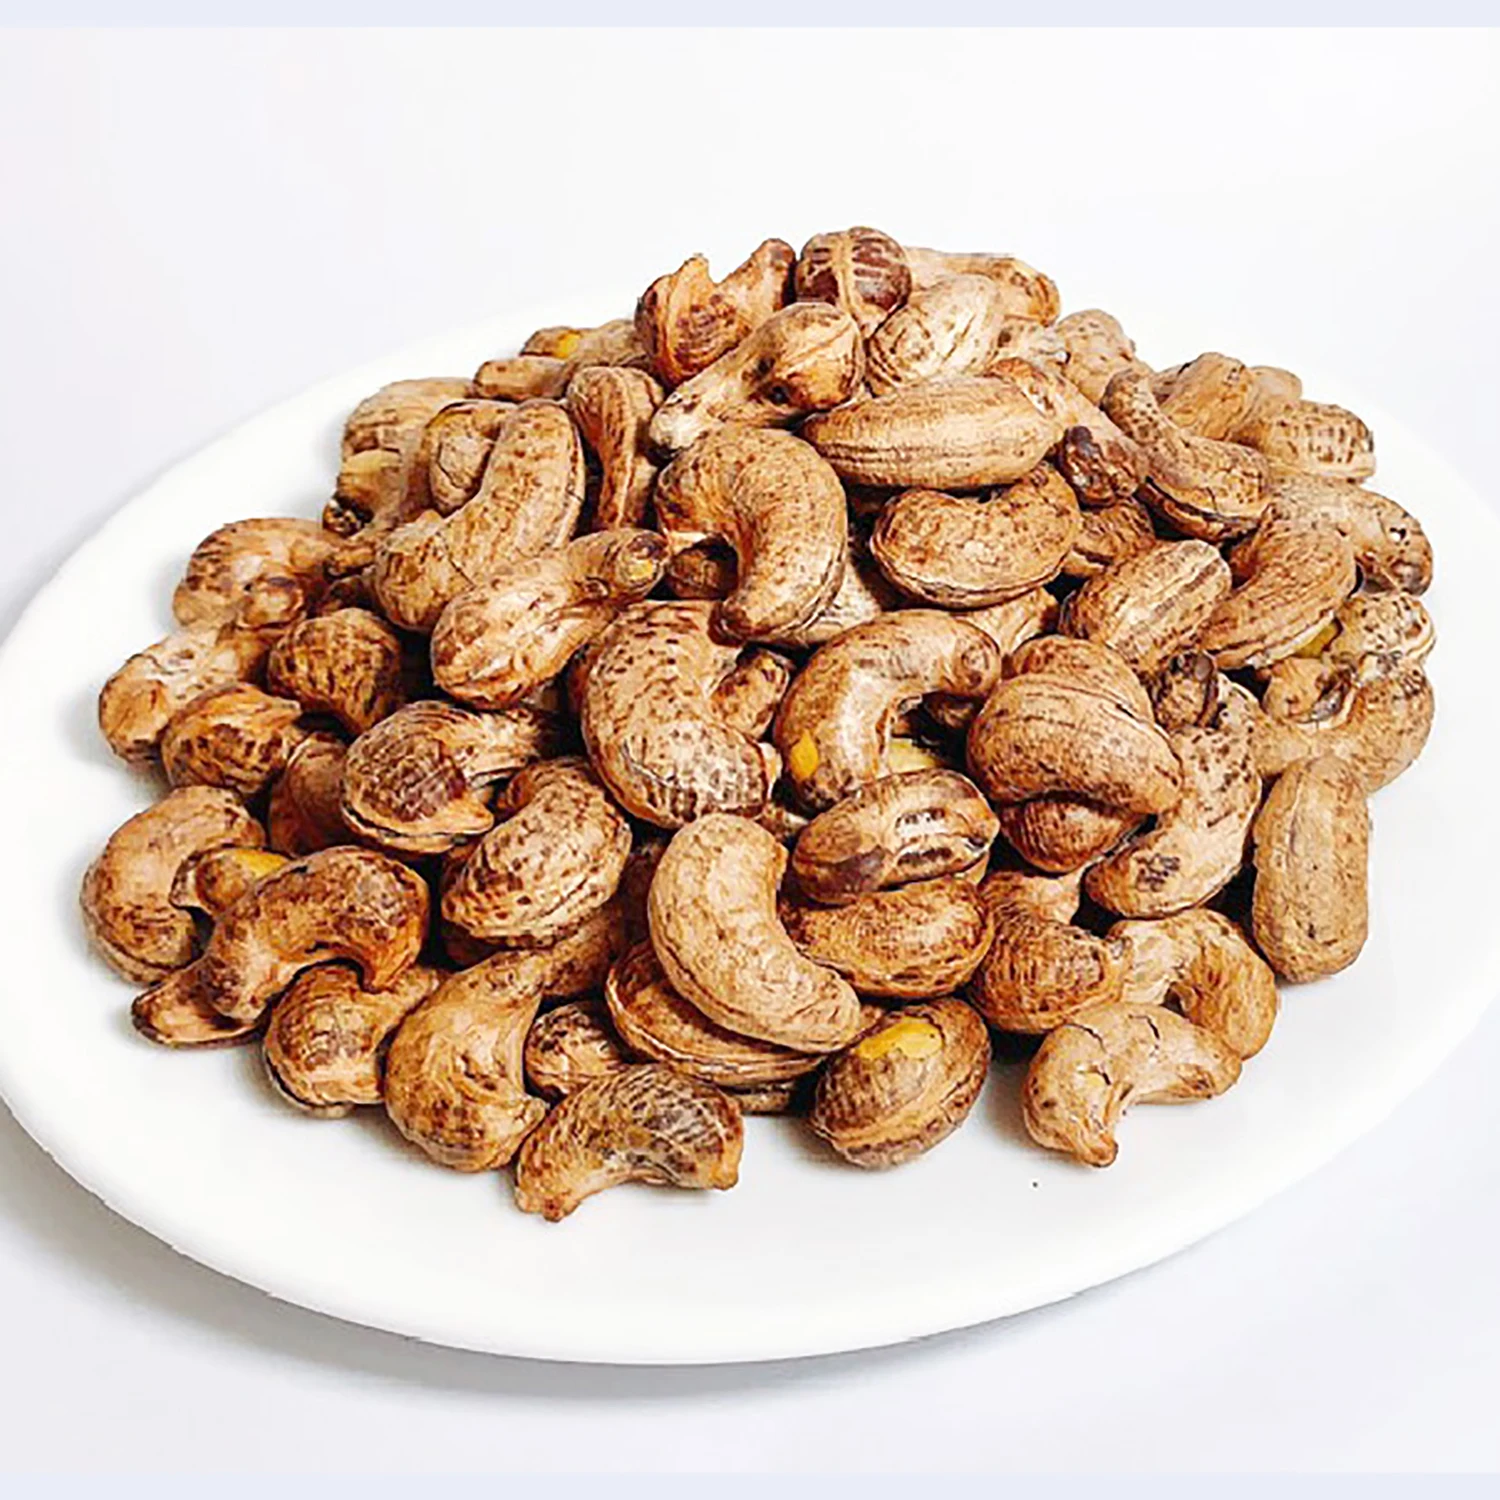 Соленые жареные свежие орехи кешью лучшие высококачественные продукты из Вьетнама V-Store OEM